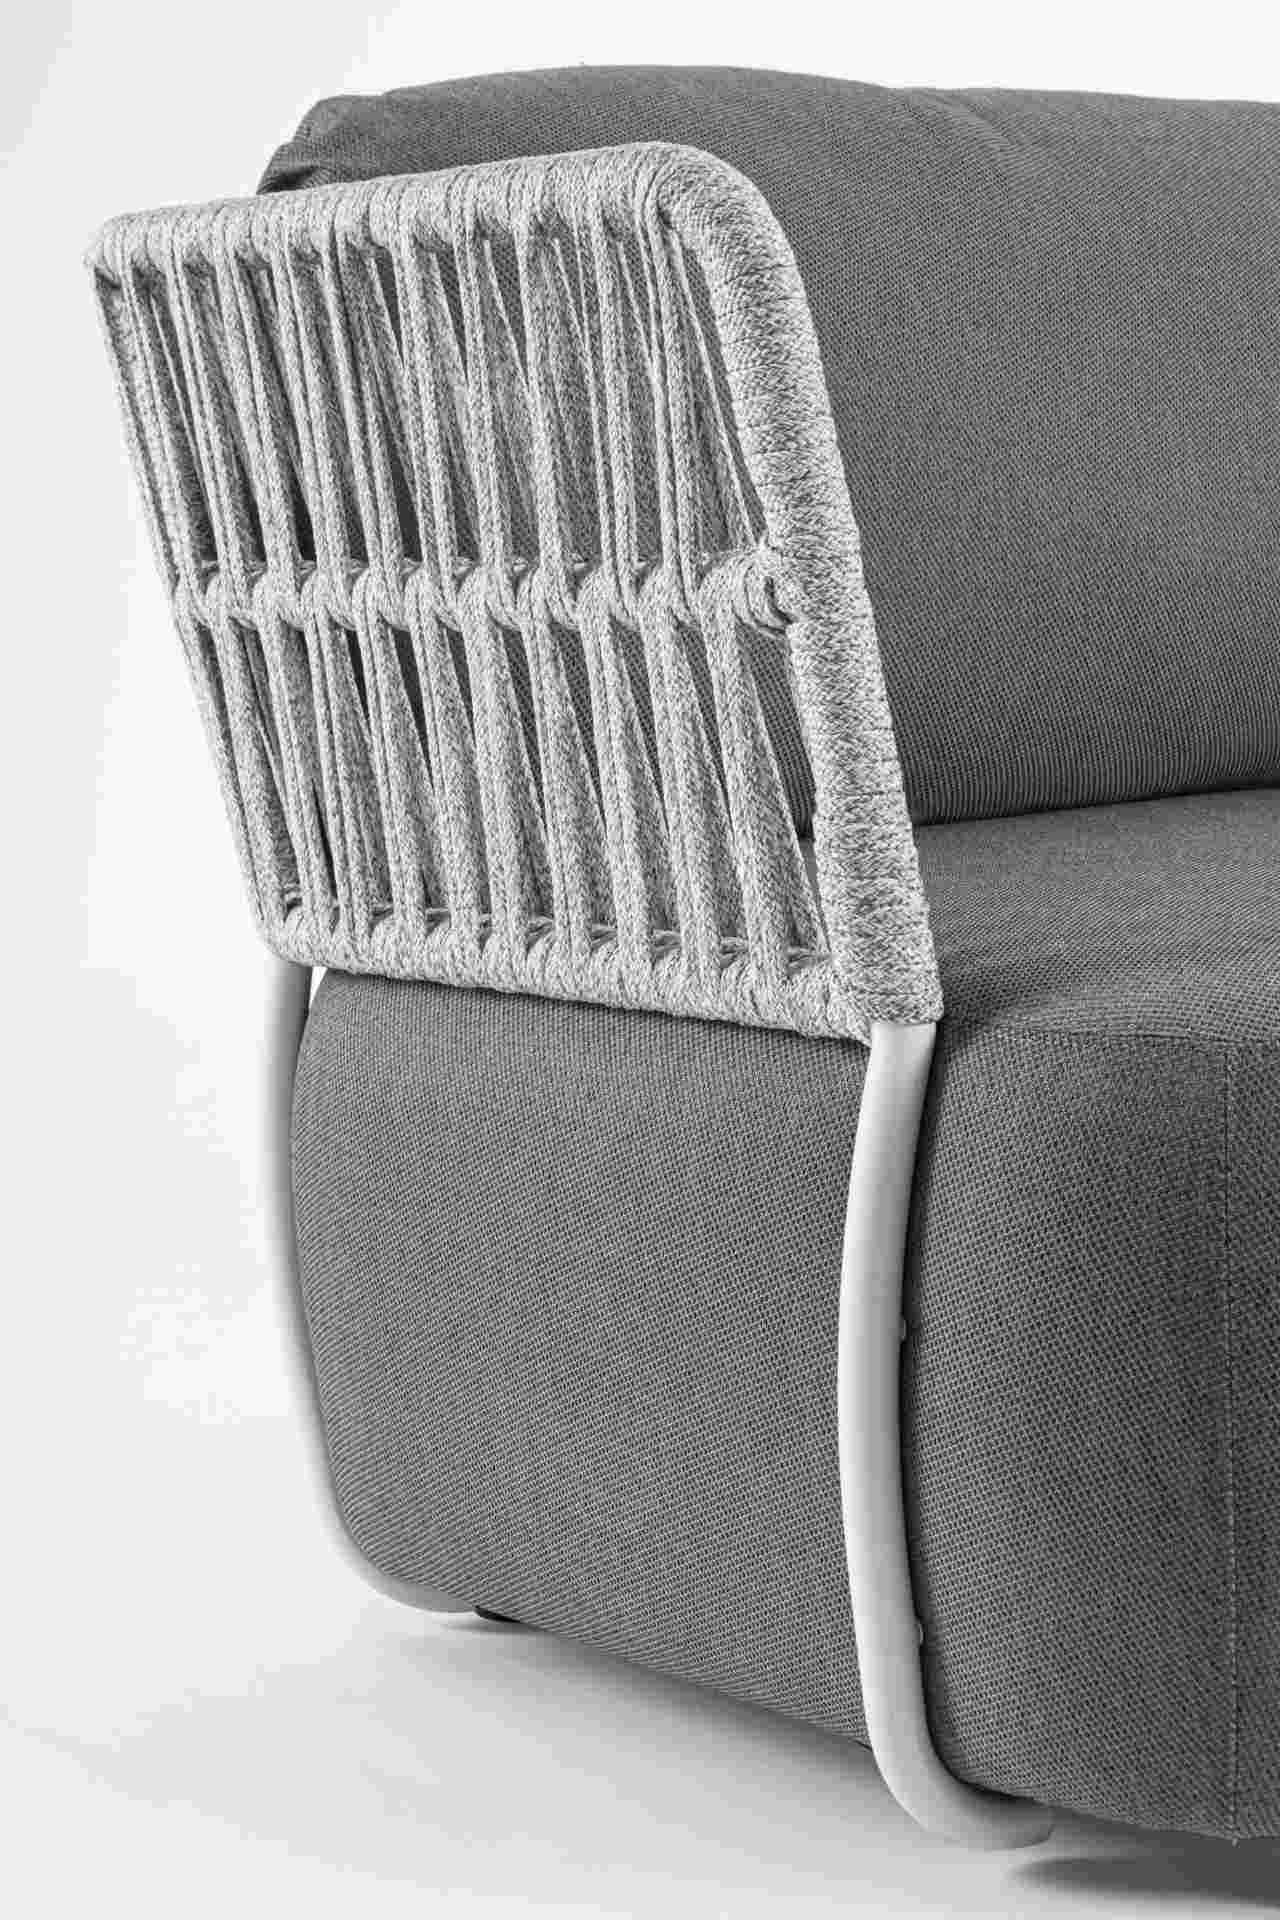 Das Gartensofa Palmer überzeugt mit seinem modernen Design. Gefertigt wurde es aus Olefin-Stoff, welcher einen grauen Farbton besitzt. Das Gestell ist aus Aluminium und hat eine weiße Farbe. Das Sofa verfügt über eine Sitzhöhe von 40 cm und ist für den Ou